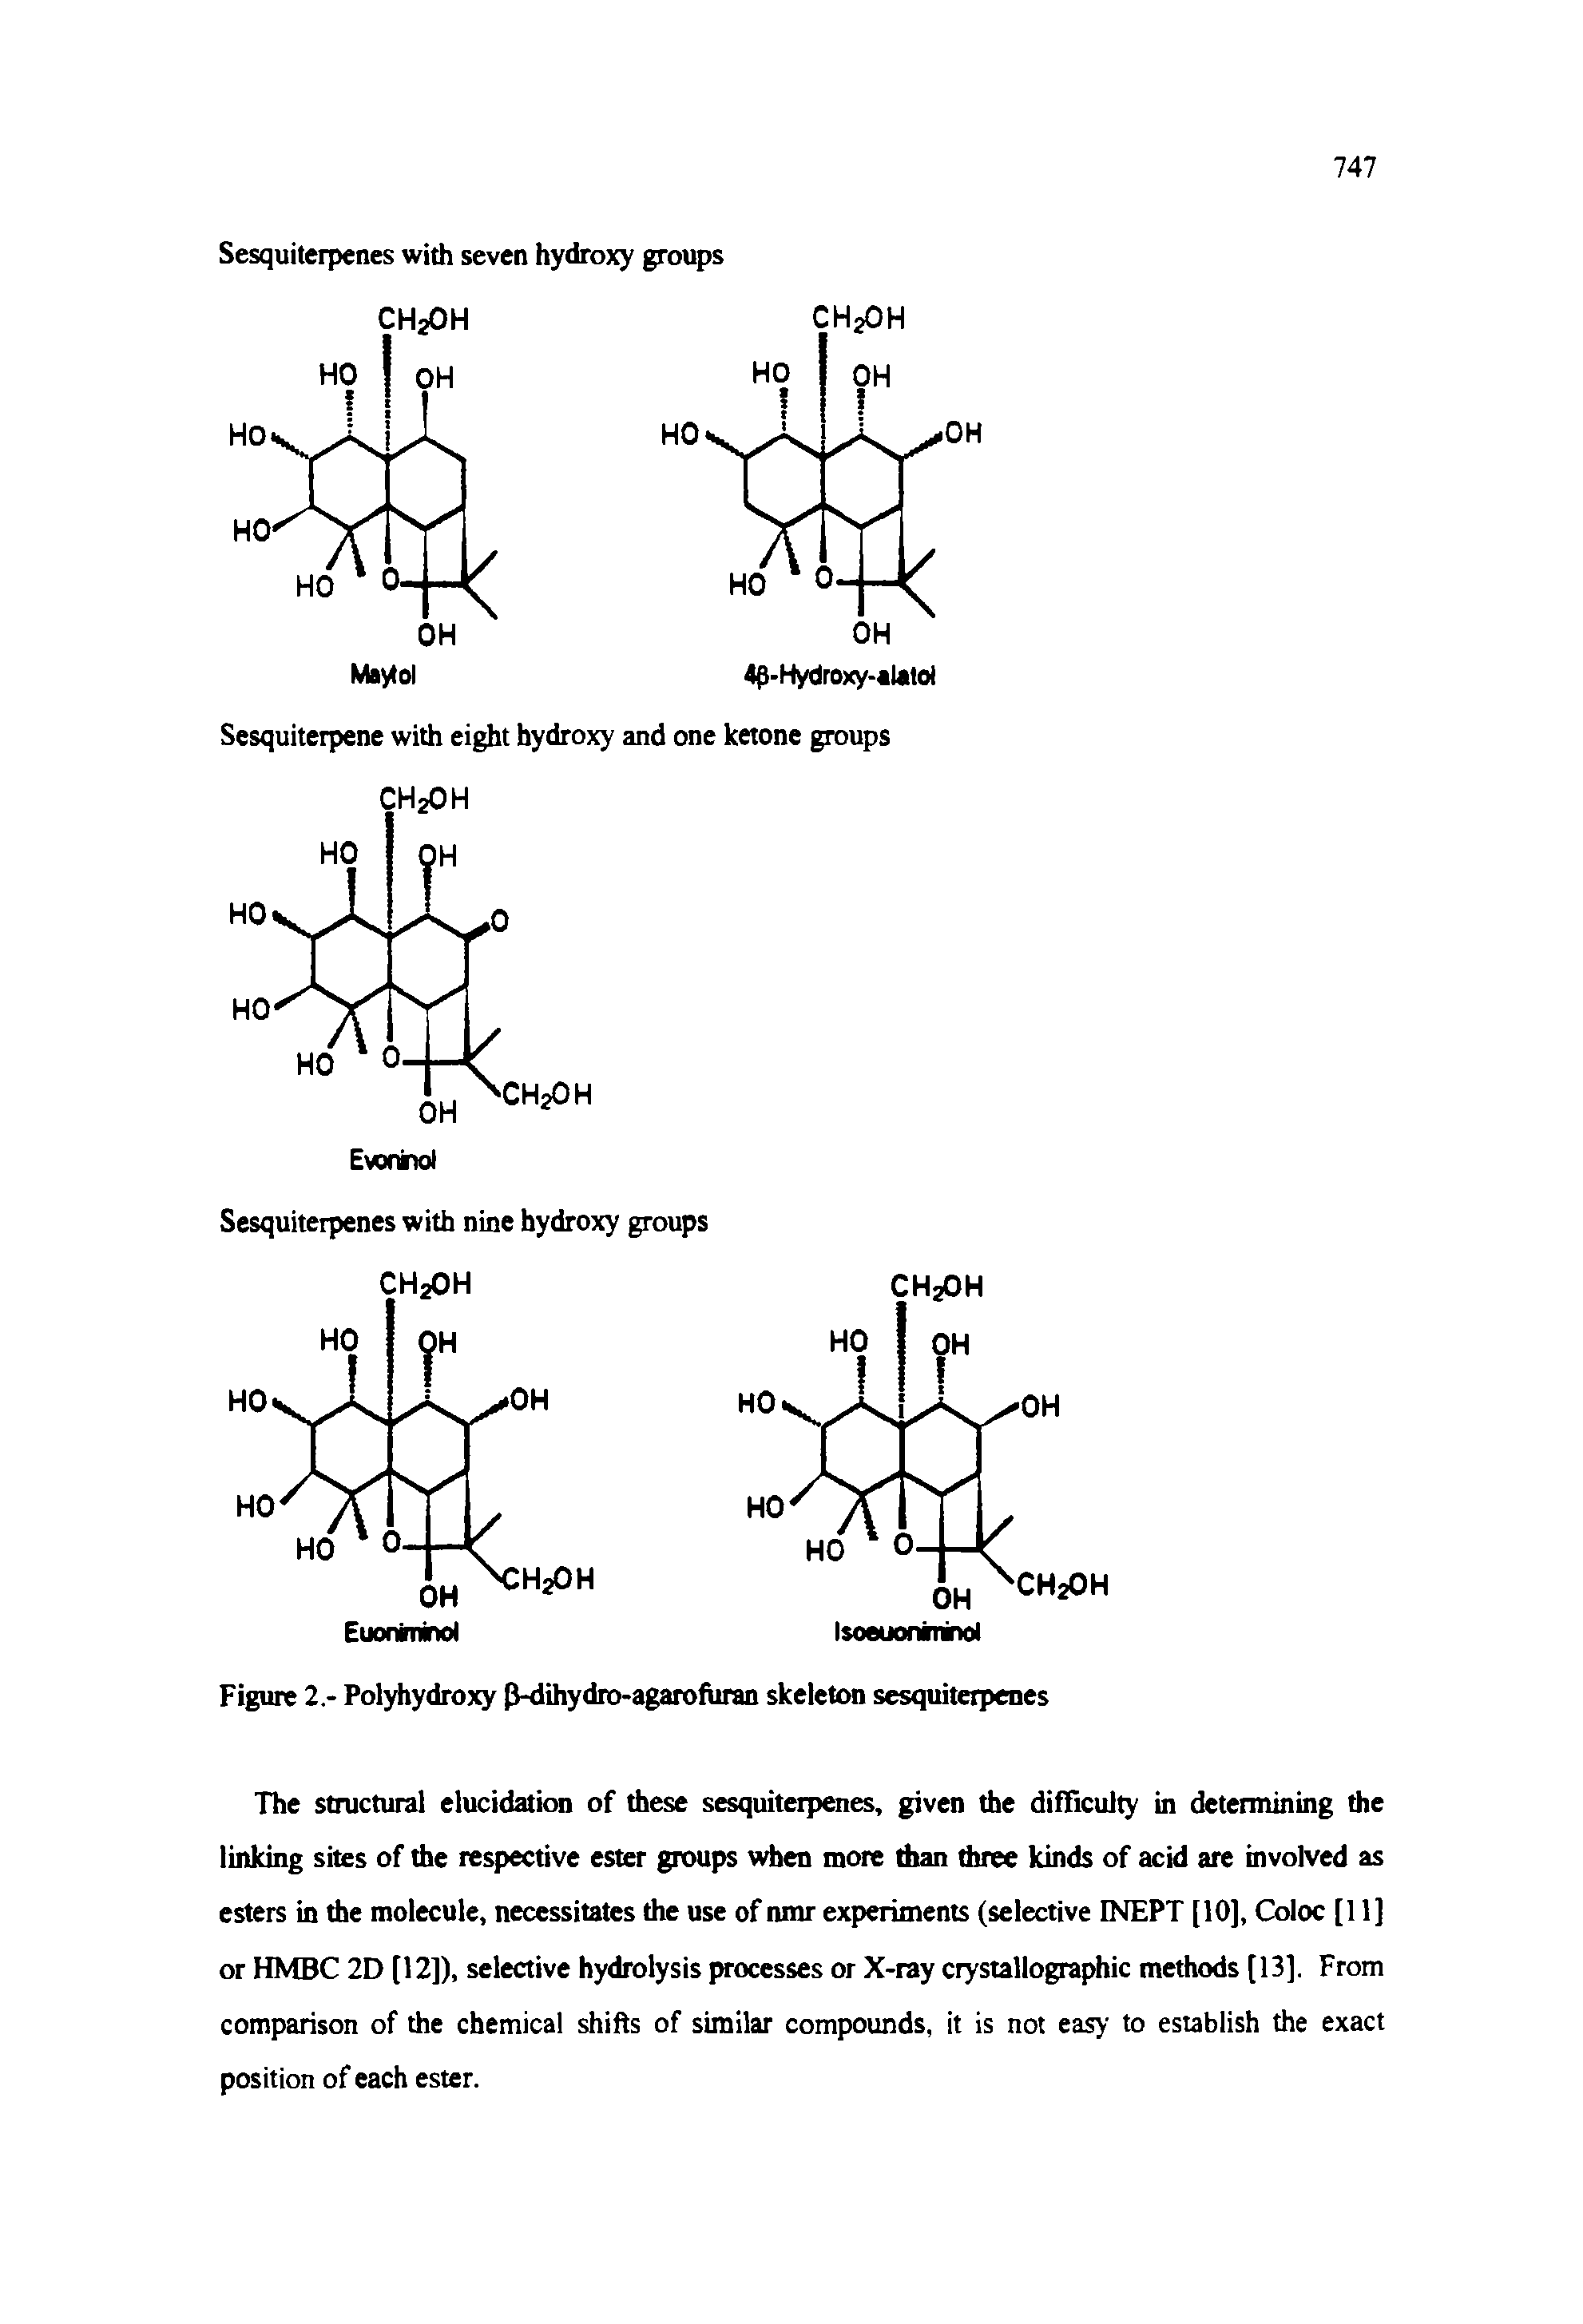 Figure 2.- Polyhydroxy p-dihydro-agarofuran skeleton sesquiterpenes...